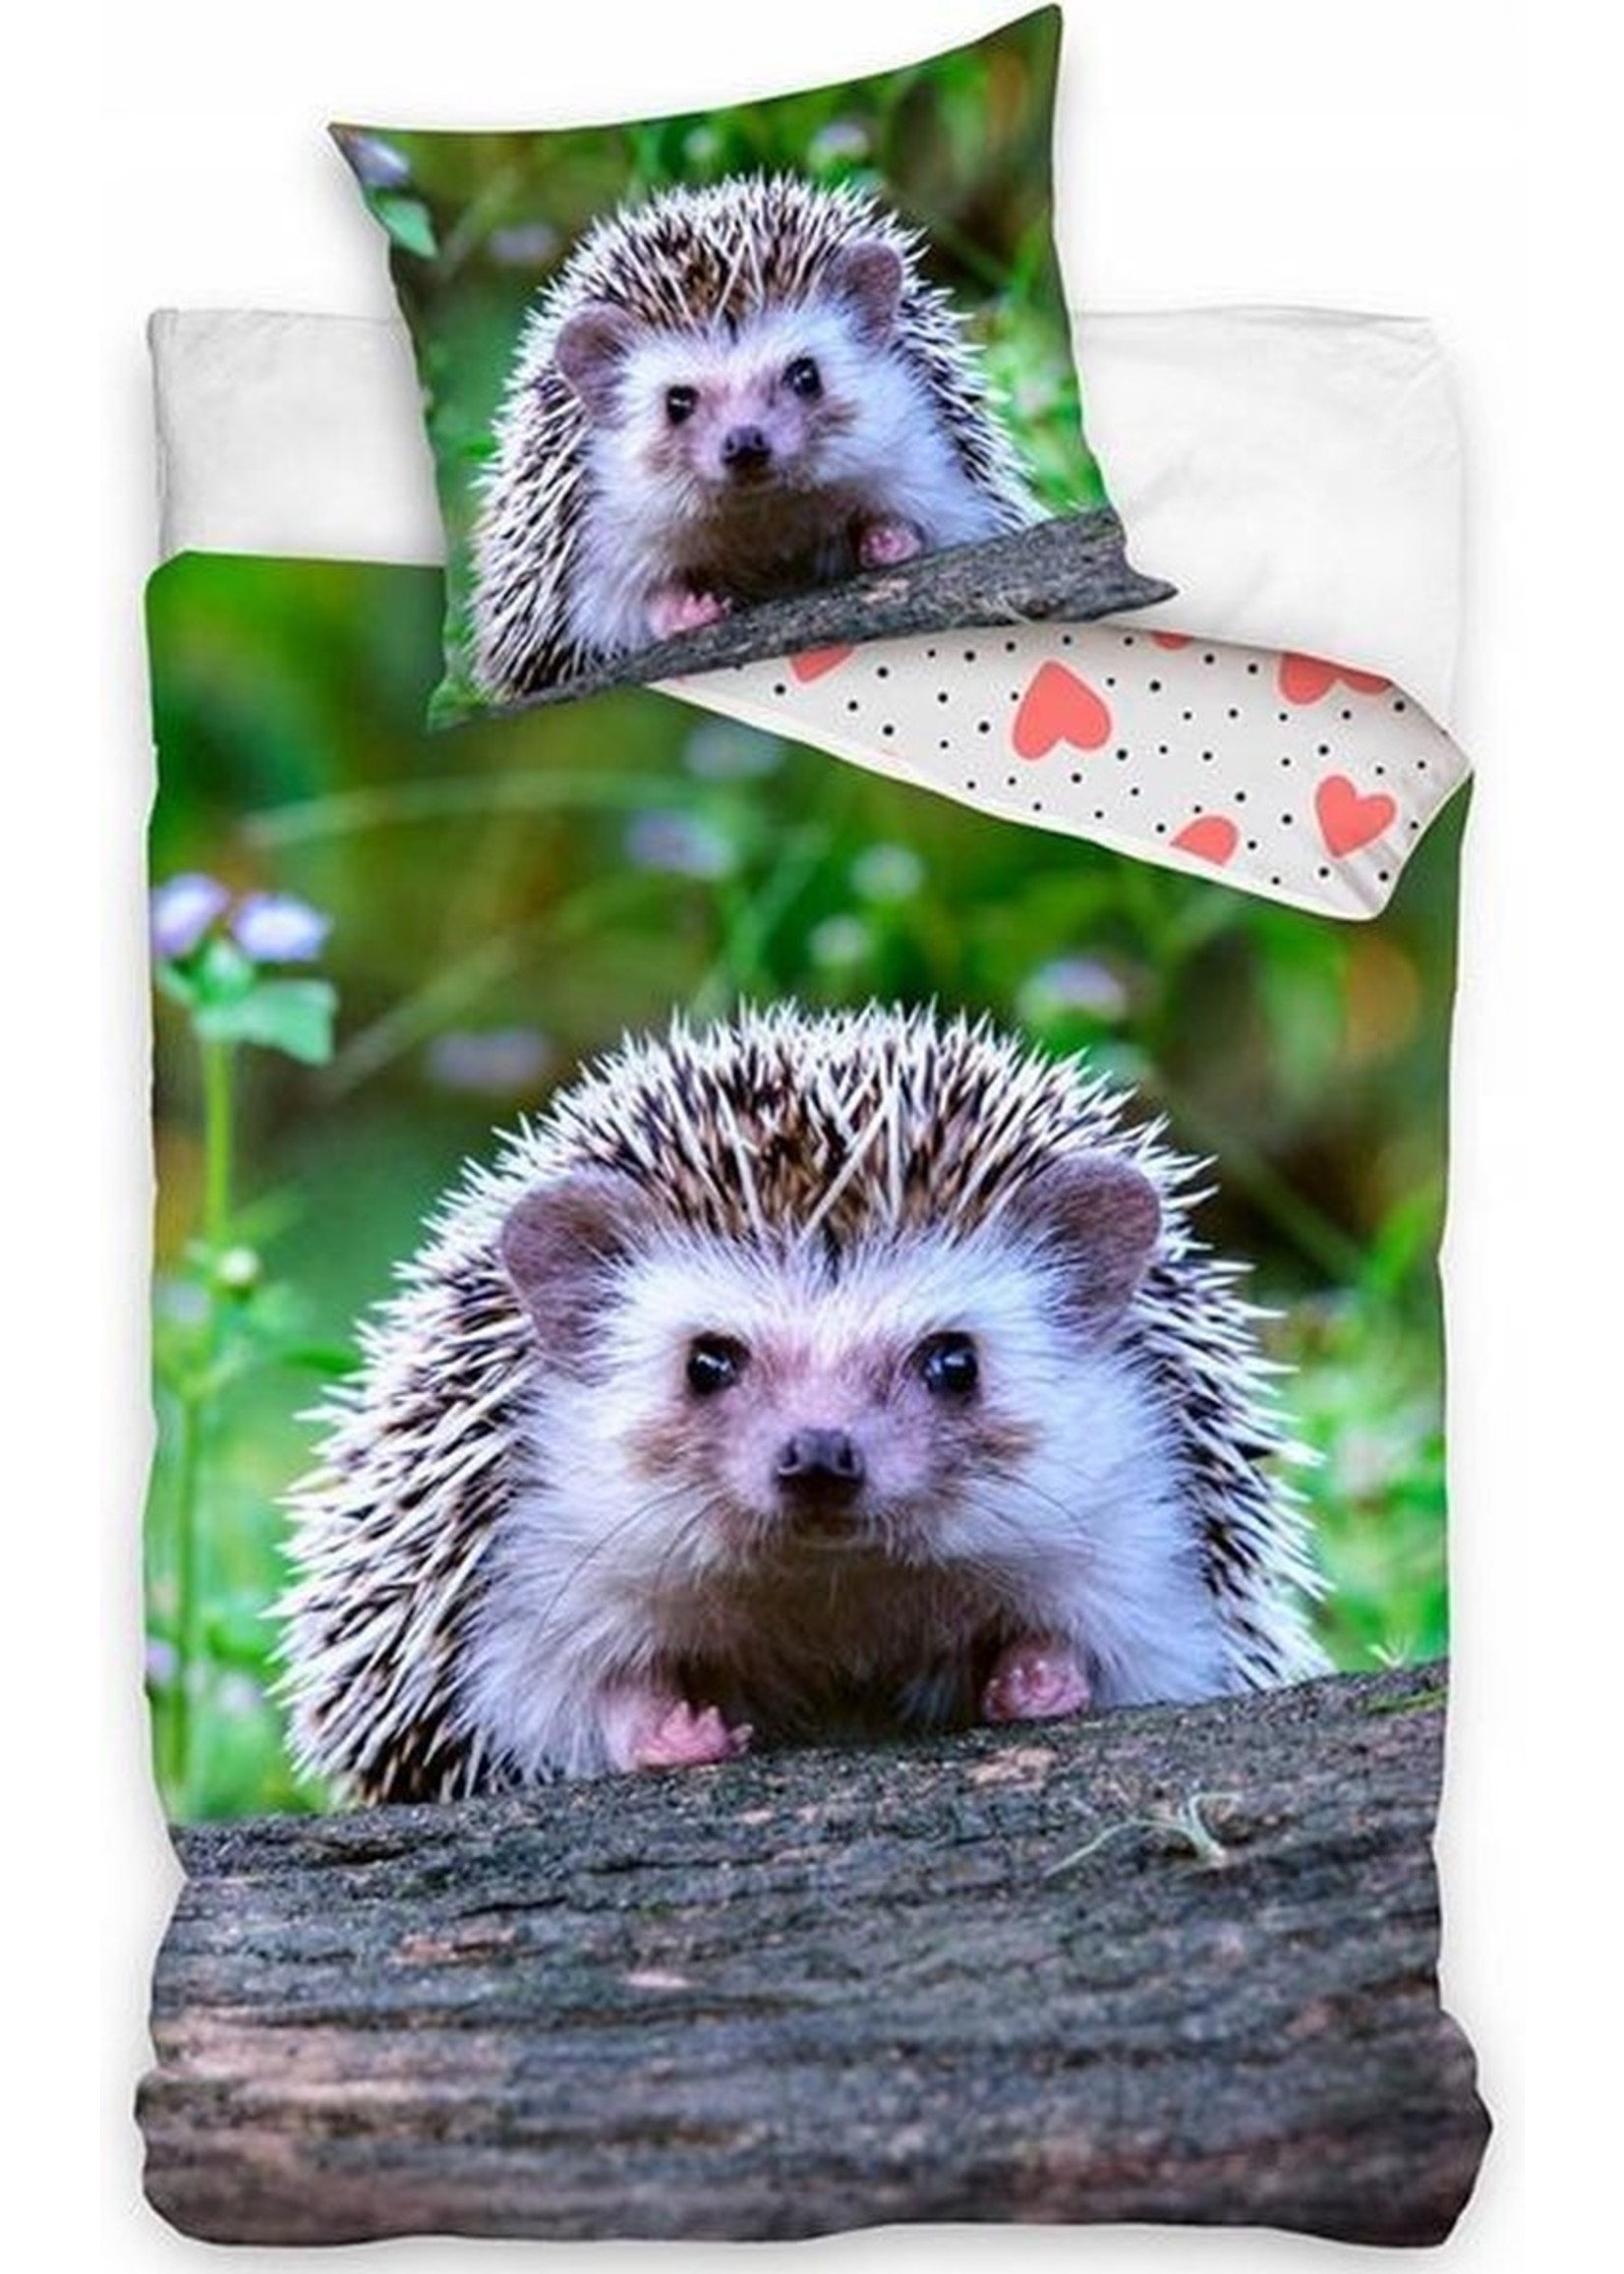 Hedgehog Duvet Cover Set - Copy